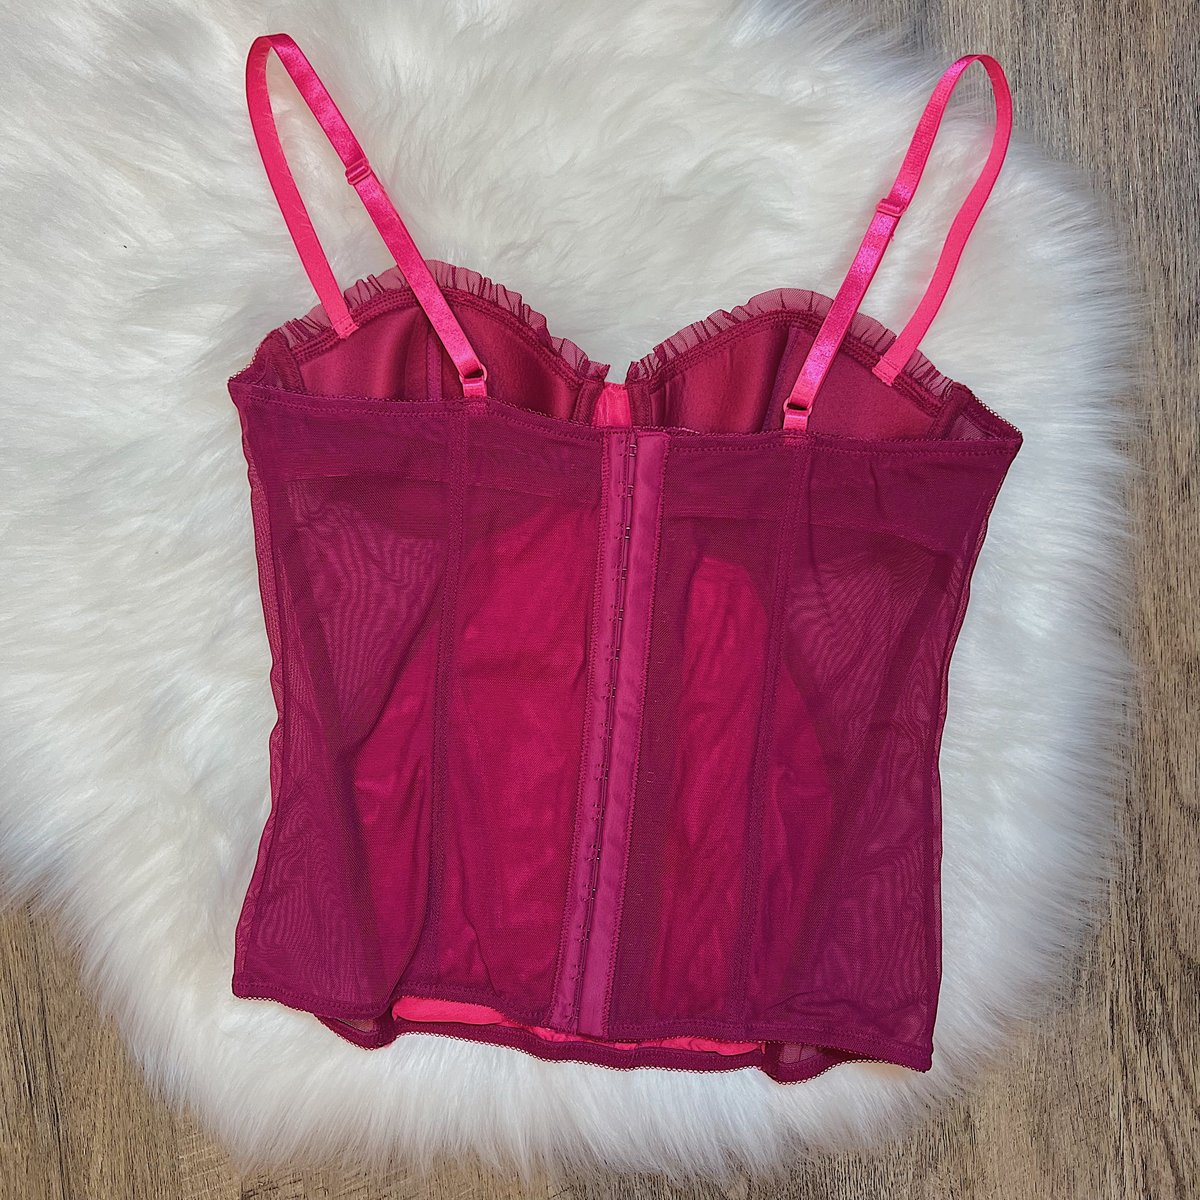 Size 34B/32C - Victoria's Secret Pink Lace Bustier